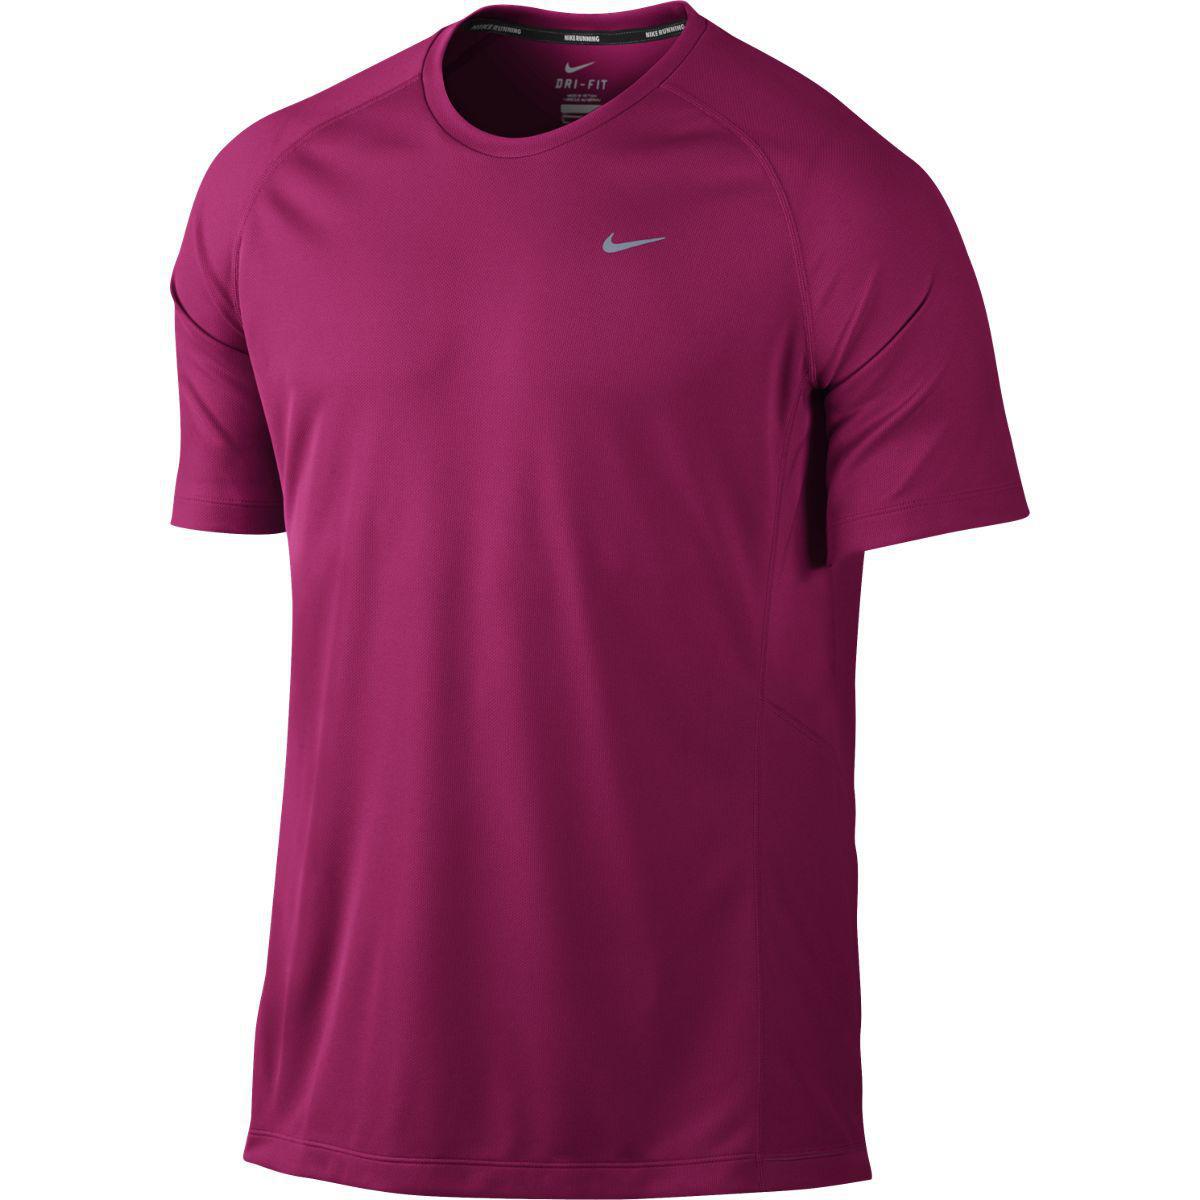 Nike Mens Miler UV Short Sleeve Running Shirt - Fireberry - Tennisnuts.com